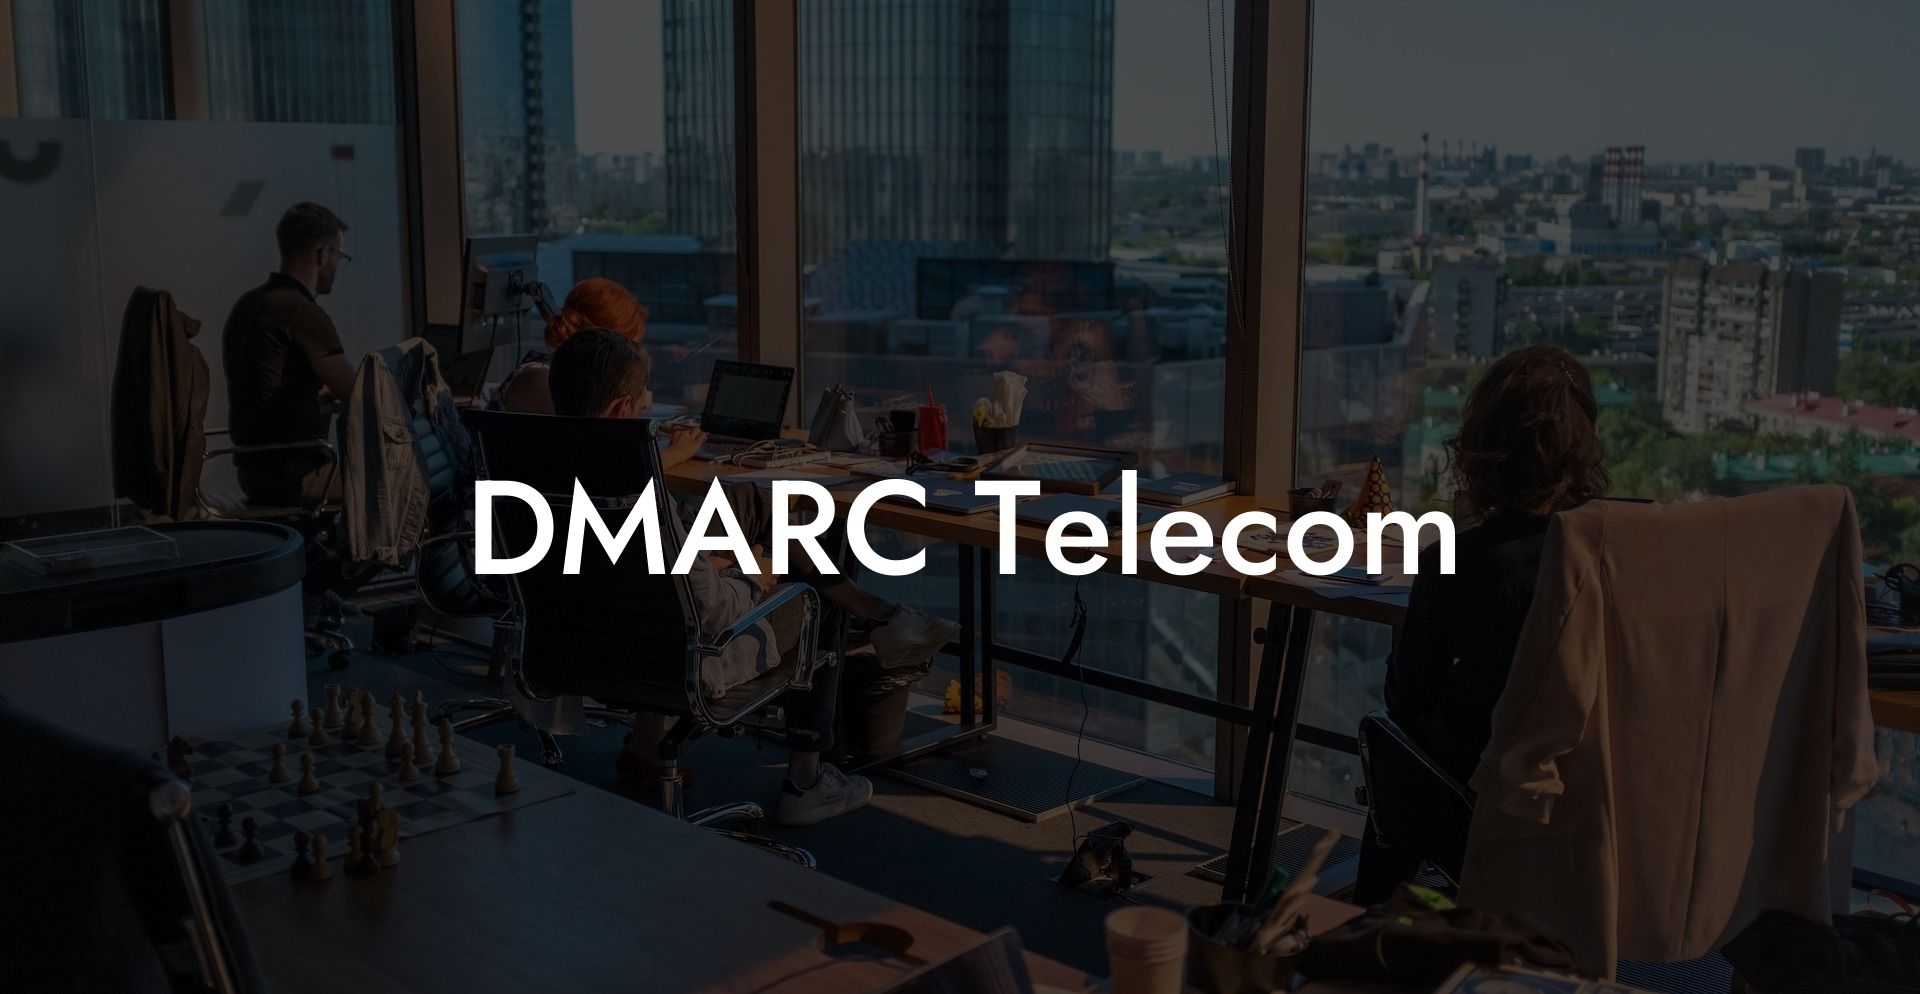 DMARC Telecom